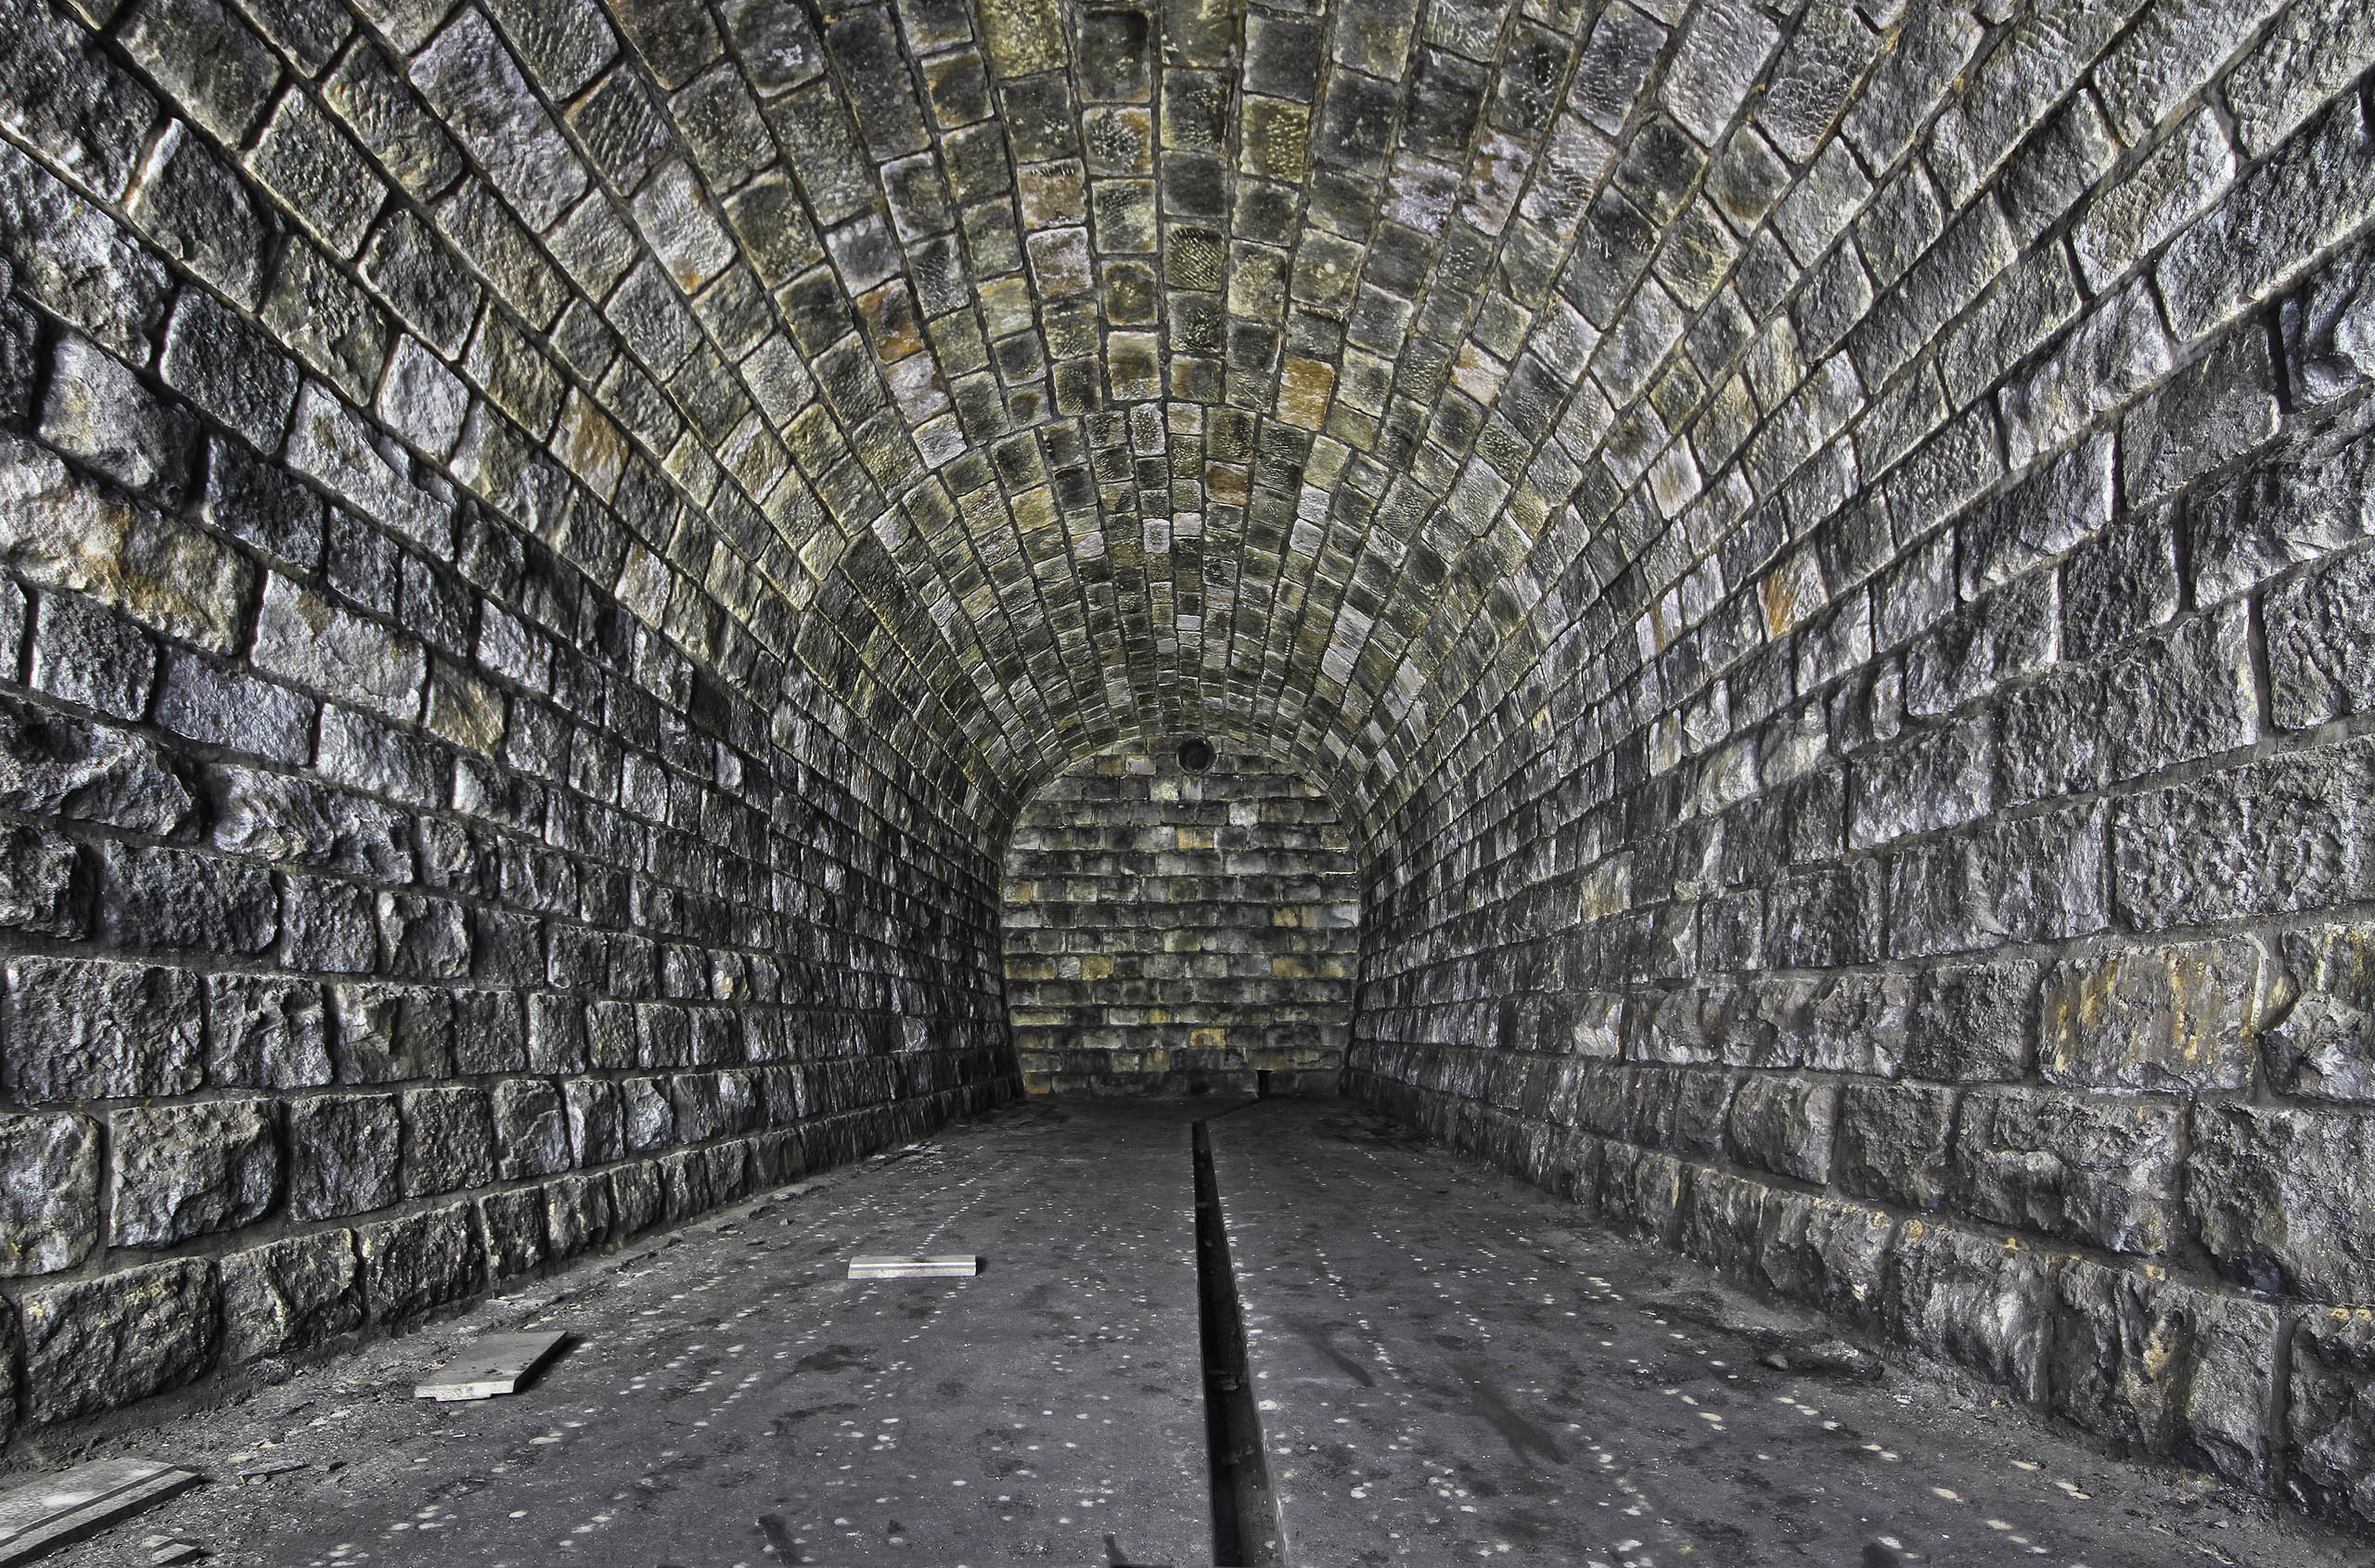 Menší, severnější, chodba přístupná z jiné části tunelu tvoří pouze jednoduchý prostor obdélníkového průřezu, který mohly využít chemické stroje.